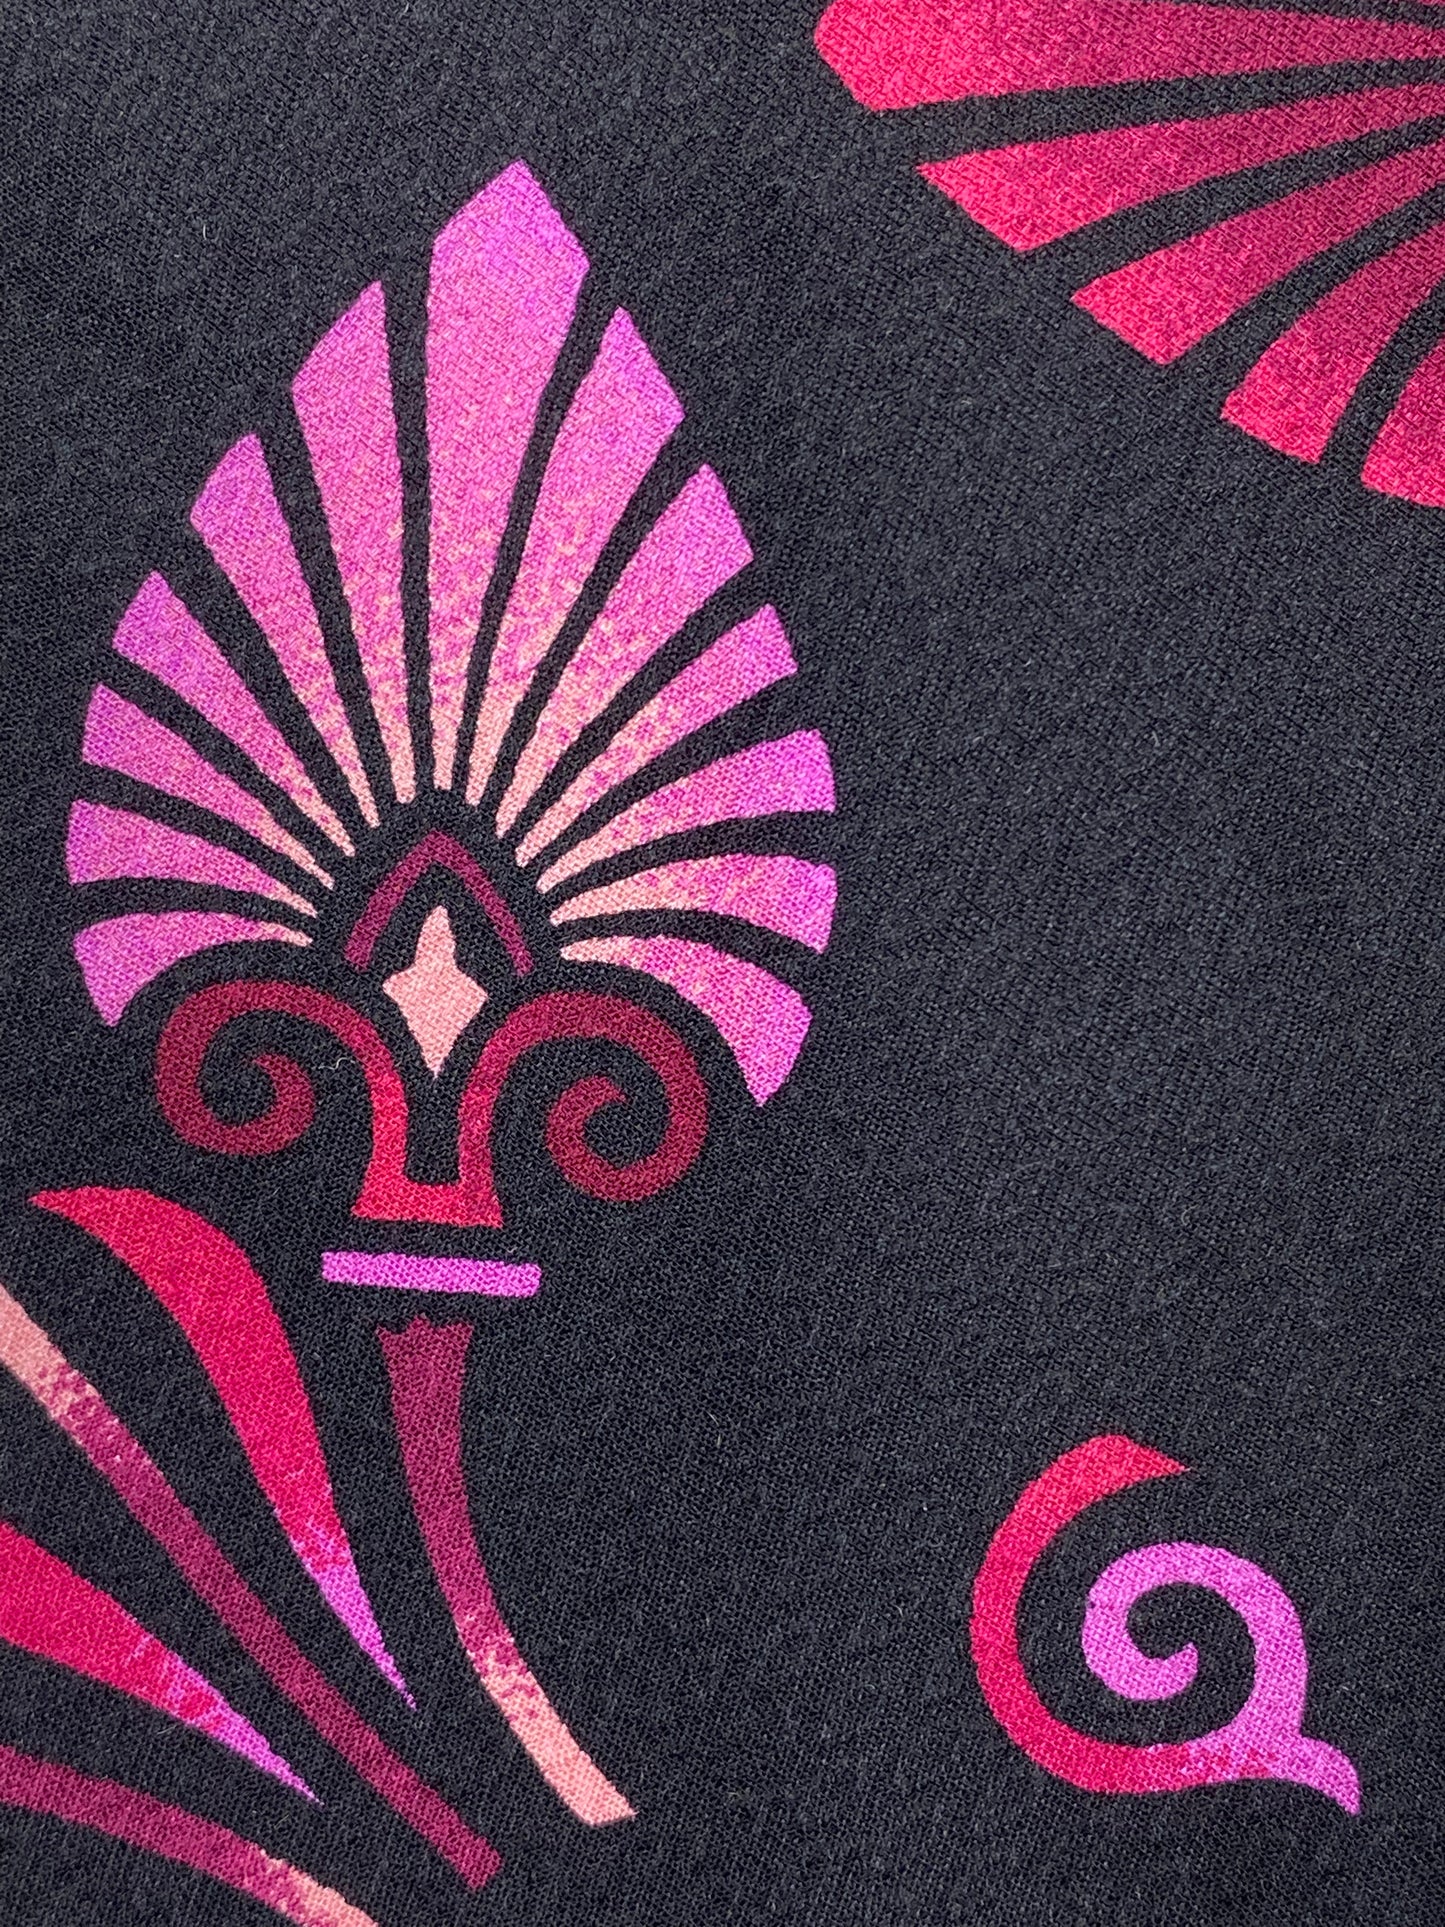 Close-up of: 90s Deadstock Silk Necktie, Men's Vintage Pink Tikki Pattern Tie, NOS